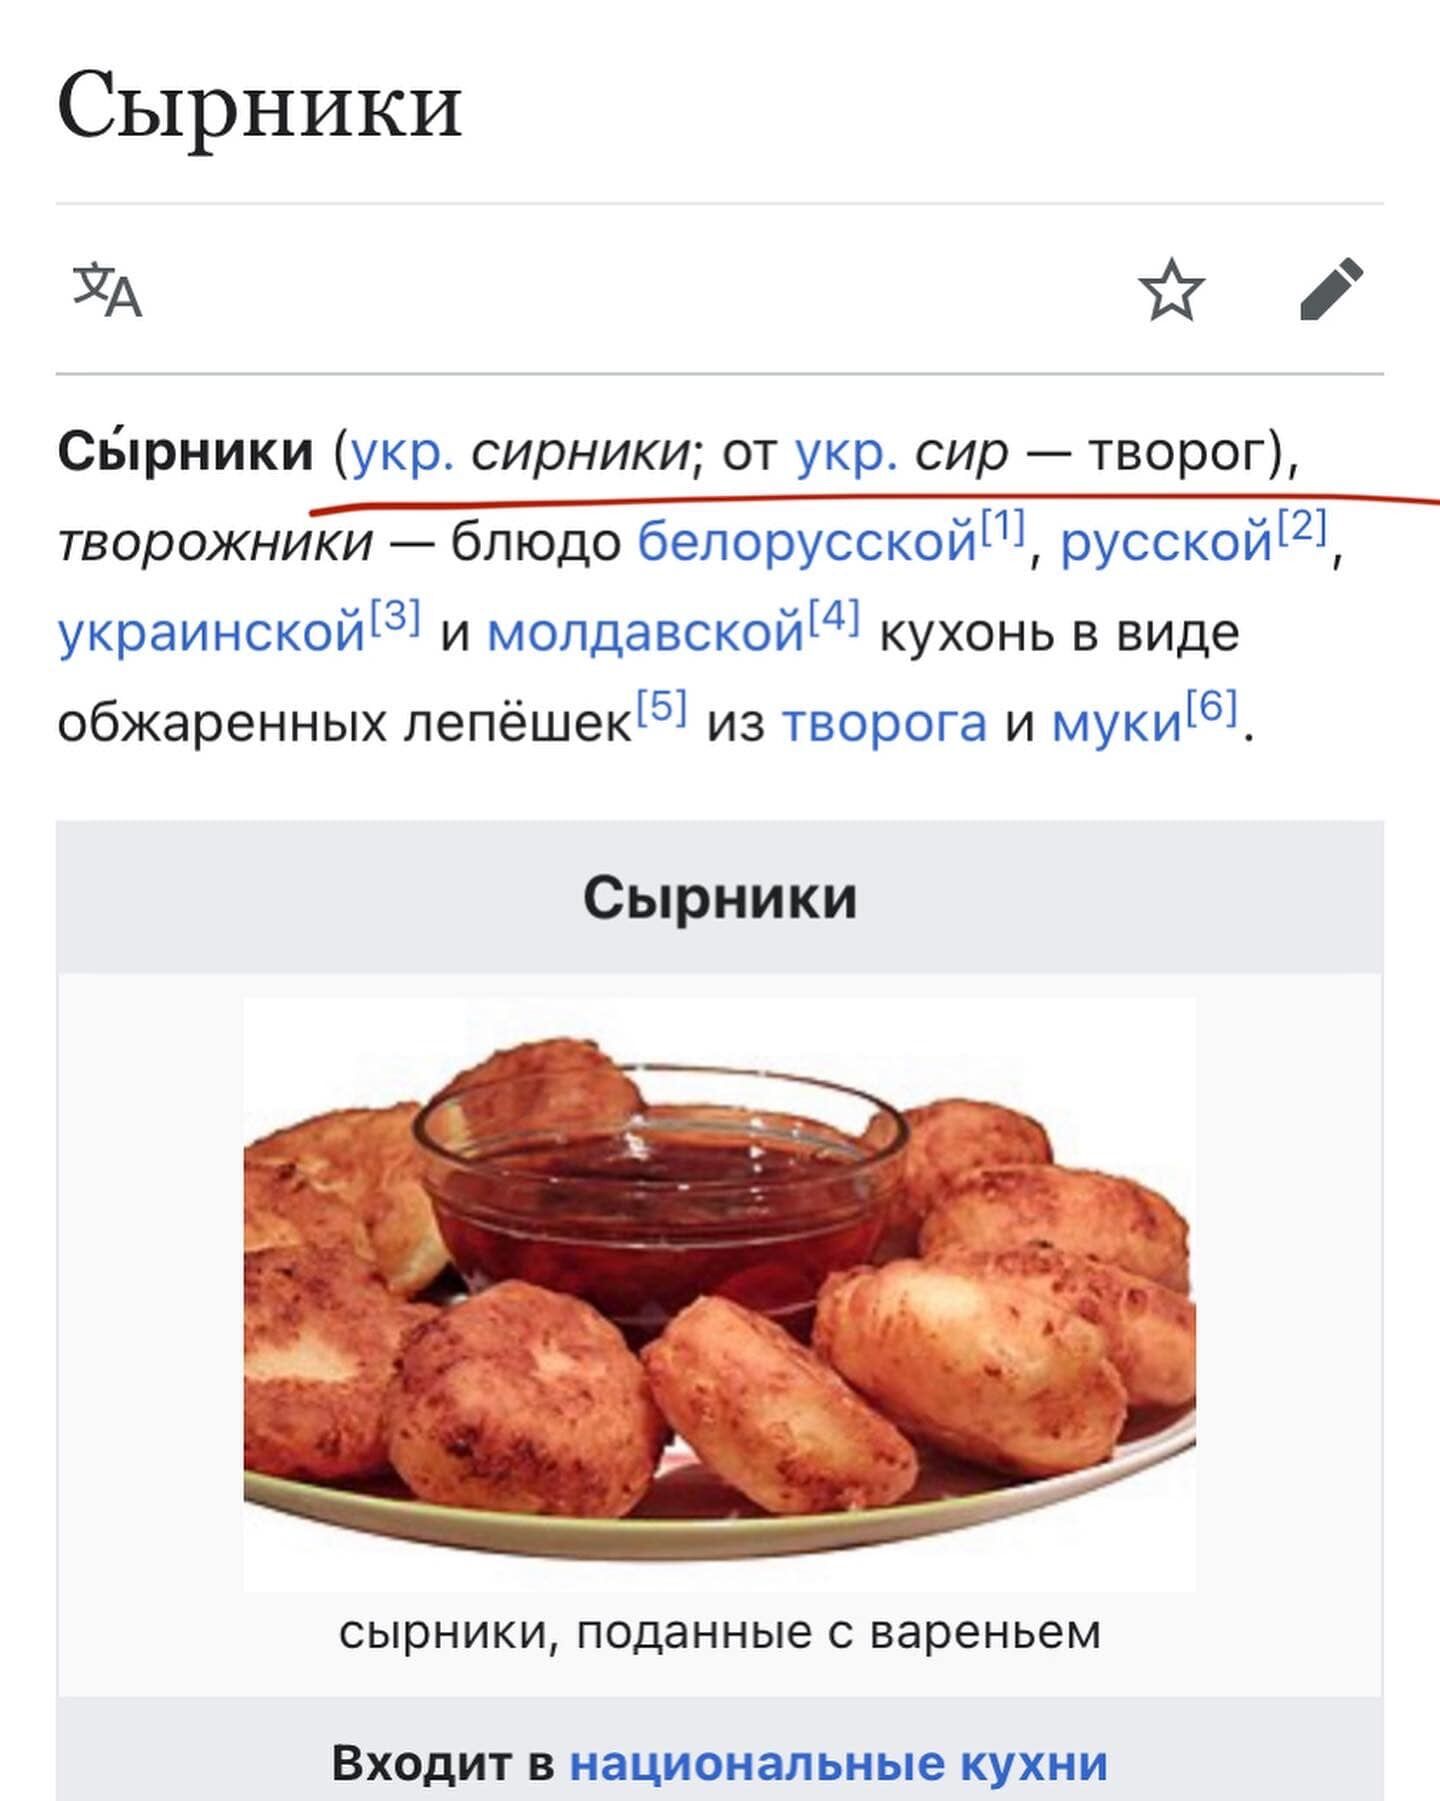 Сирники – українська страва. А росіяни хай лишають собі щі і творожнікі